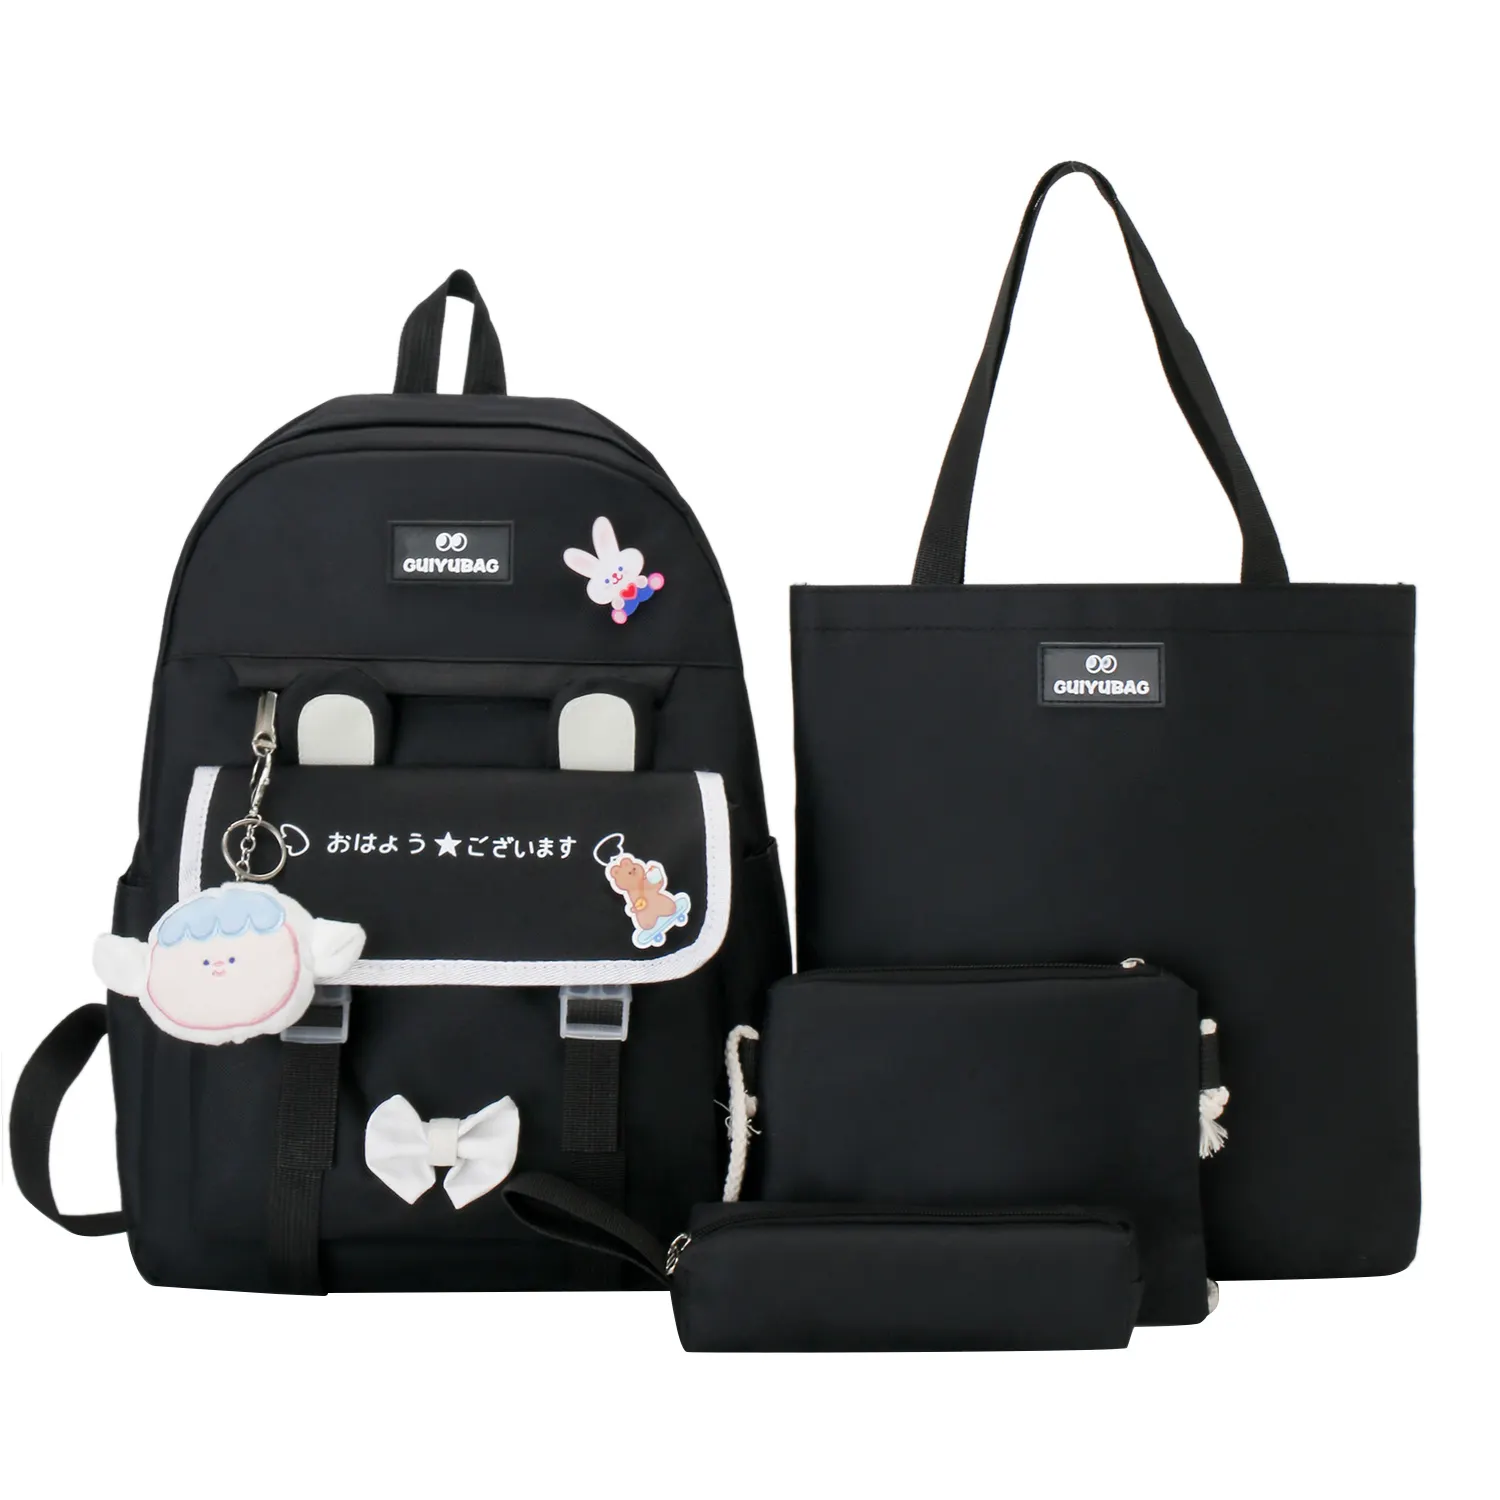 high school backpack waist bag set 4pcs schoolbag backpack set for girl and boy